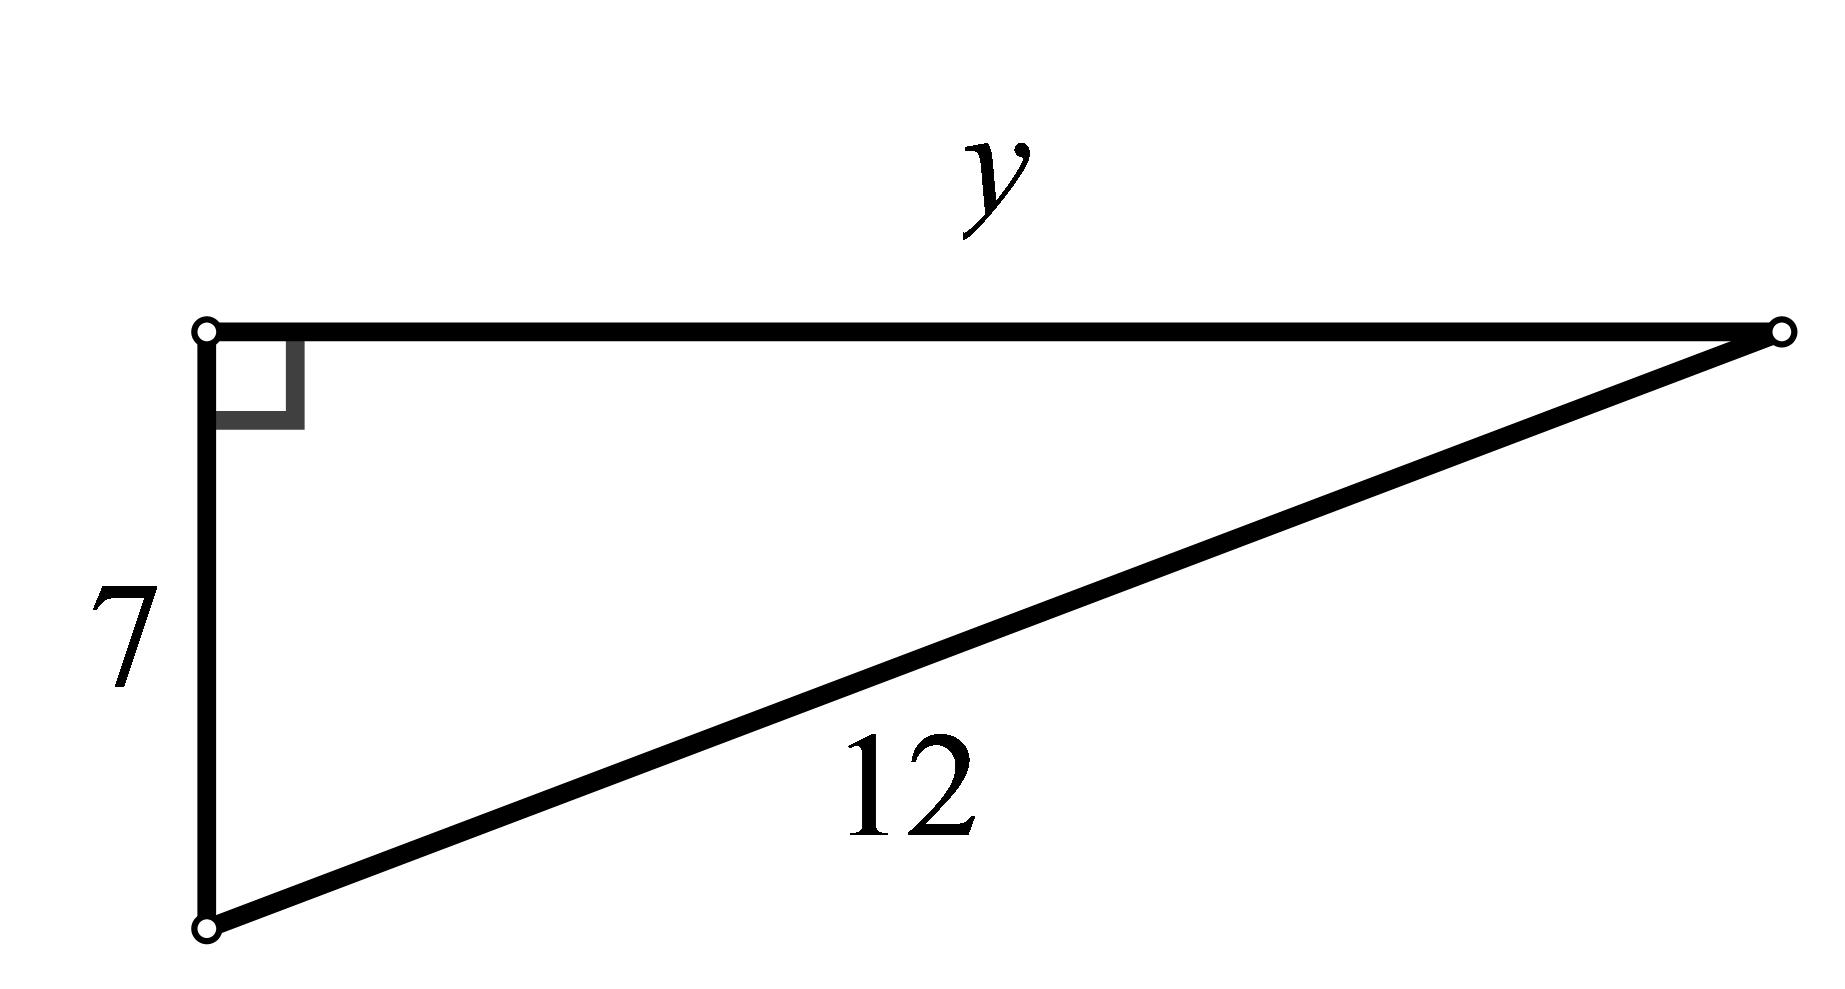 Slika prikazuje pravokutni trokut s hipotenuzom duljine 12 cm i jednom katetom duljine 7 cm